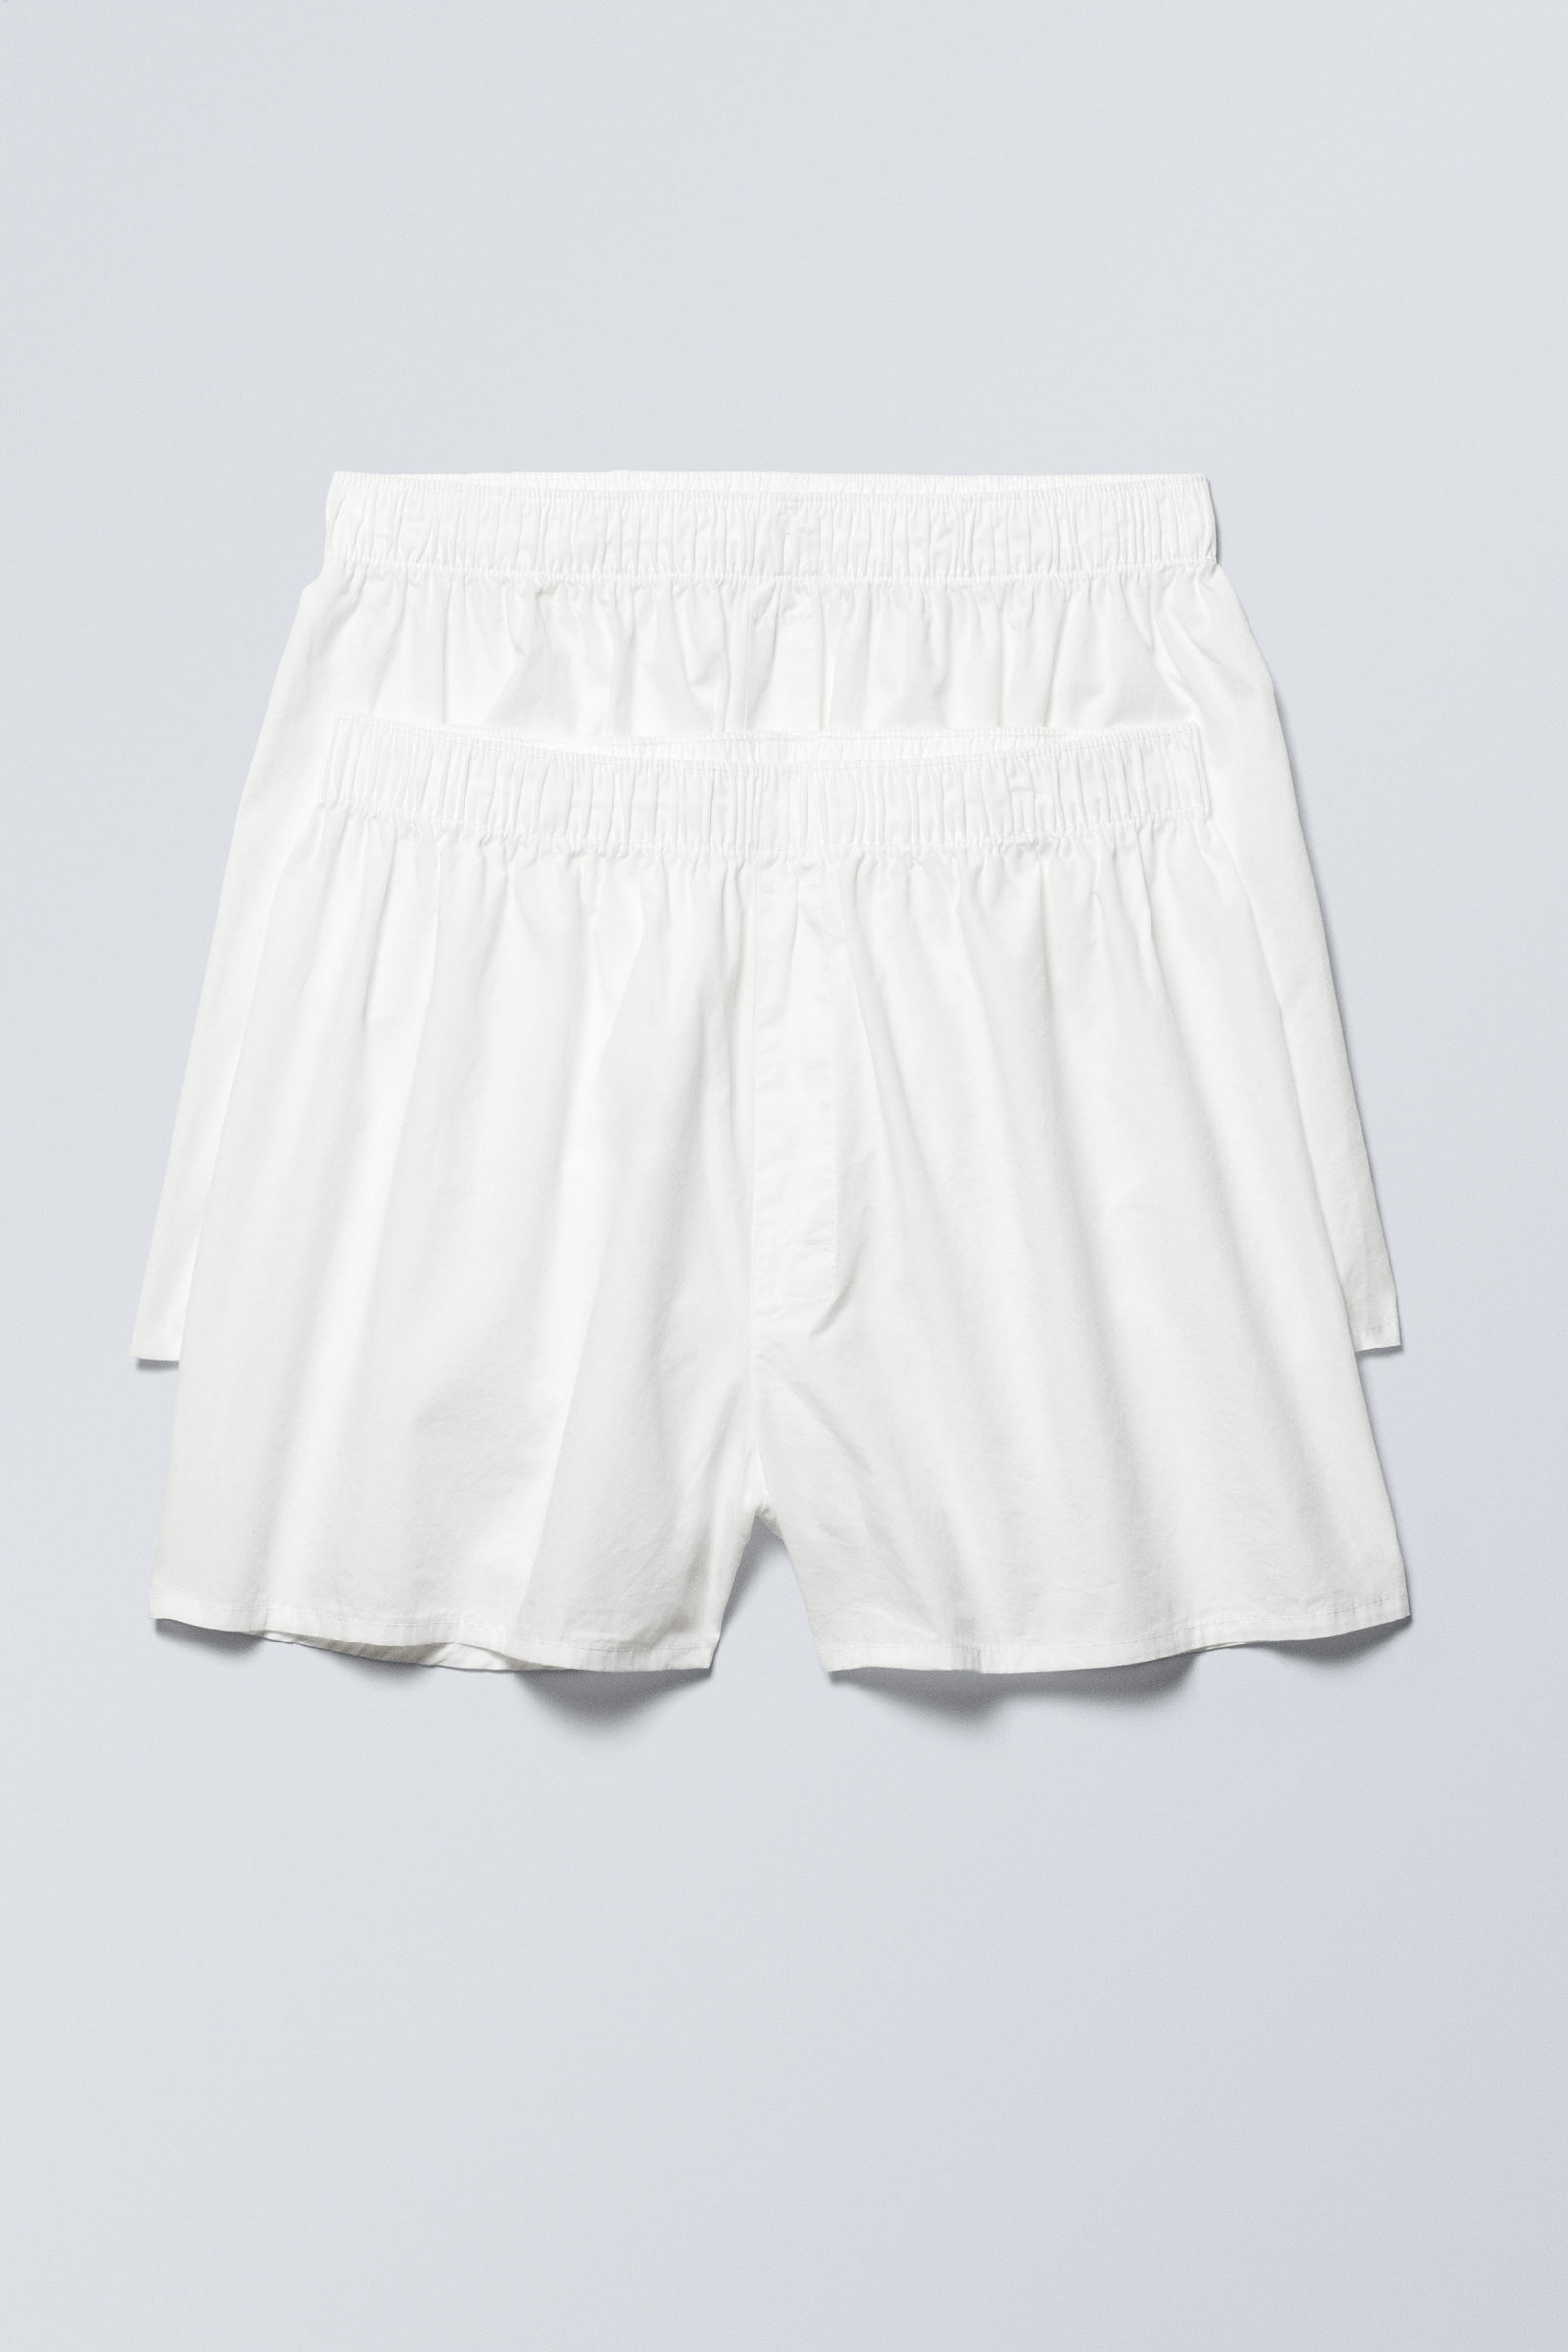 Buy Underwear For Skirt online